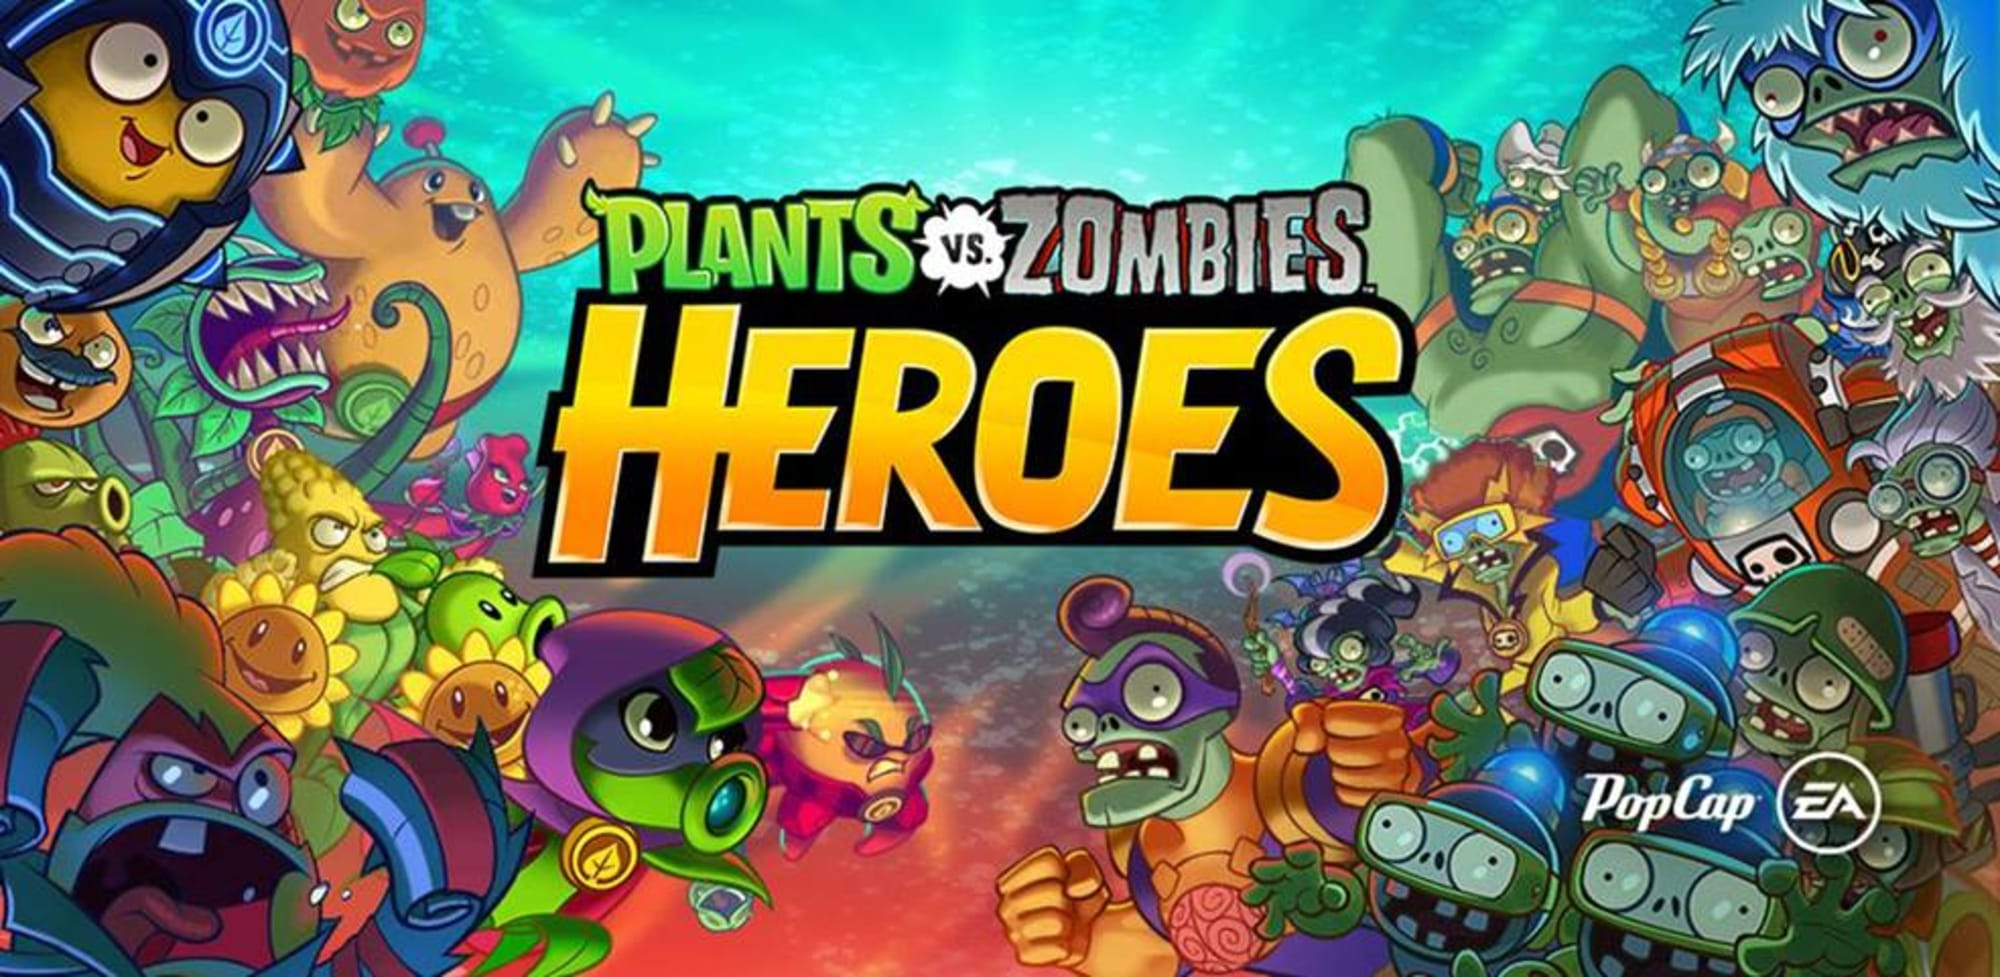 plants vs zombies 2 transfer progress android